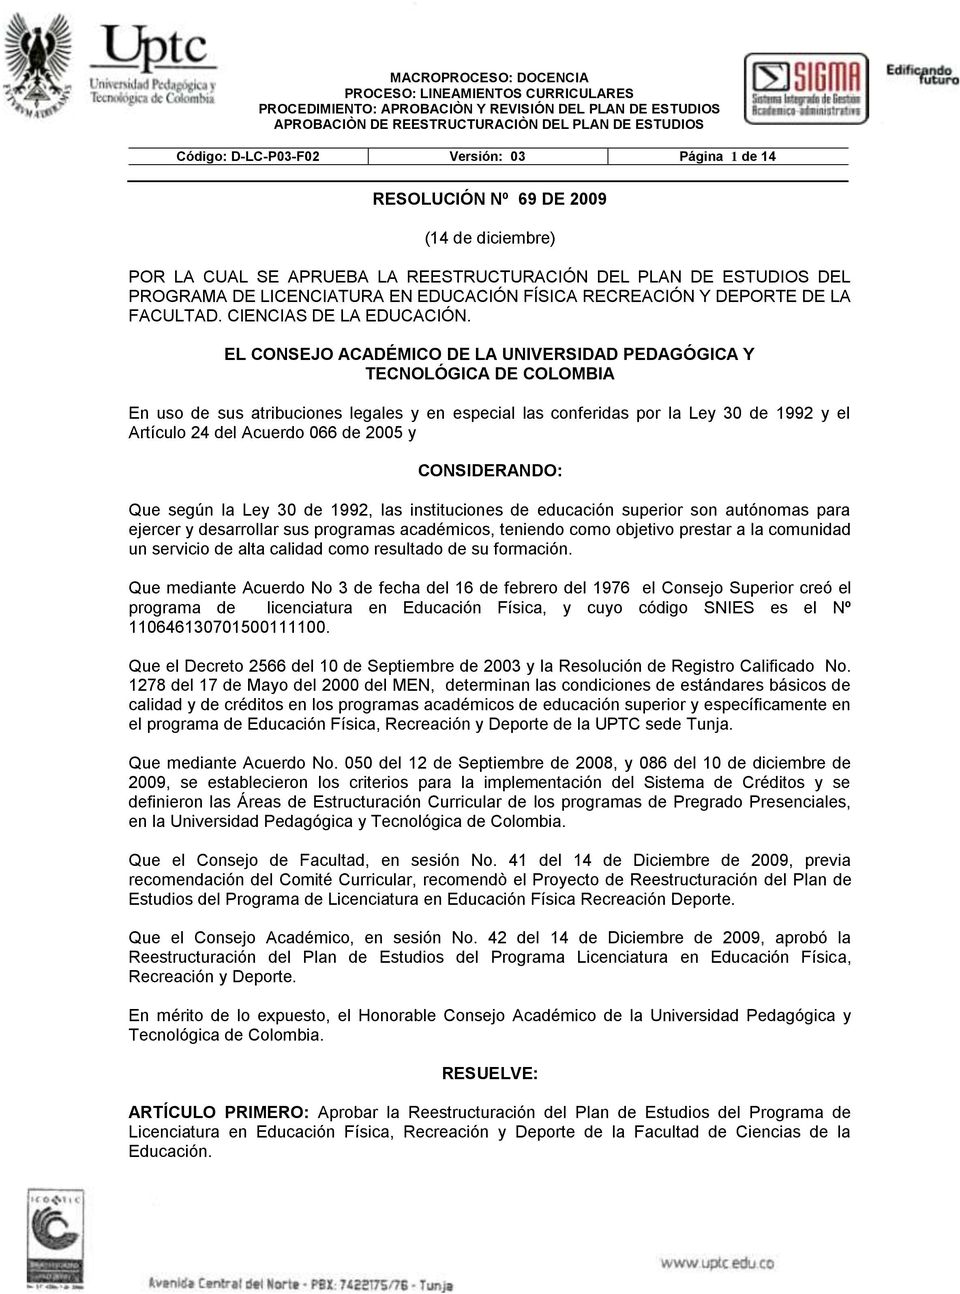 EL CONSEJO ACADÉMICO DE LA UNIVERSIDAD PEDAGÓGICA Y TECNOLÓGICA DE COLOMBIA En uso de sus atribuciones legales y en especial las conferidas por la Ley 30 de 1992 y el Artículo 24 del Acuerdo 066 de